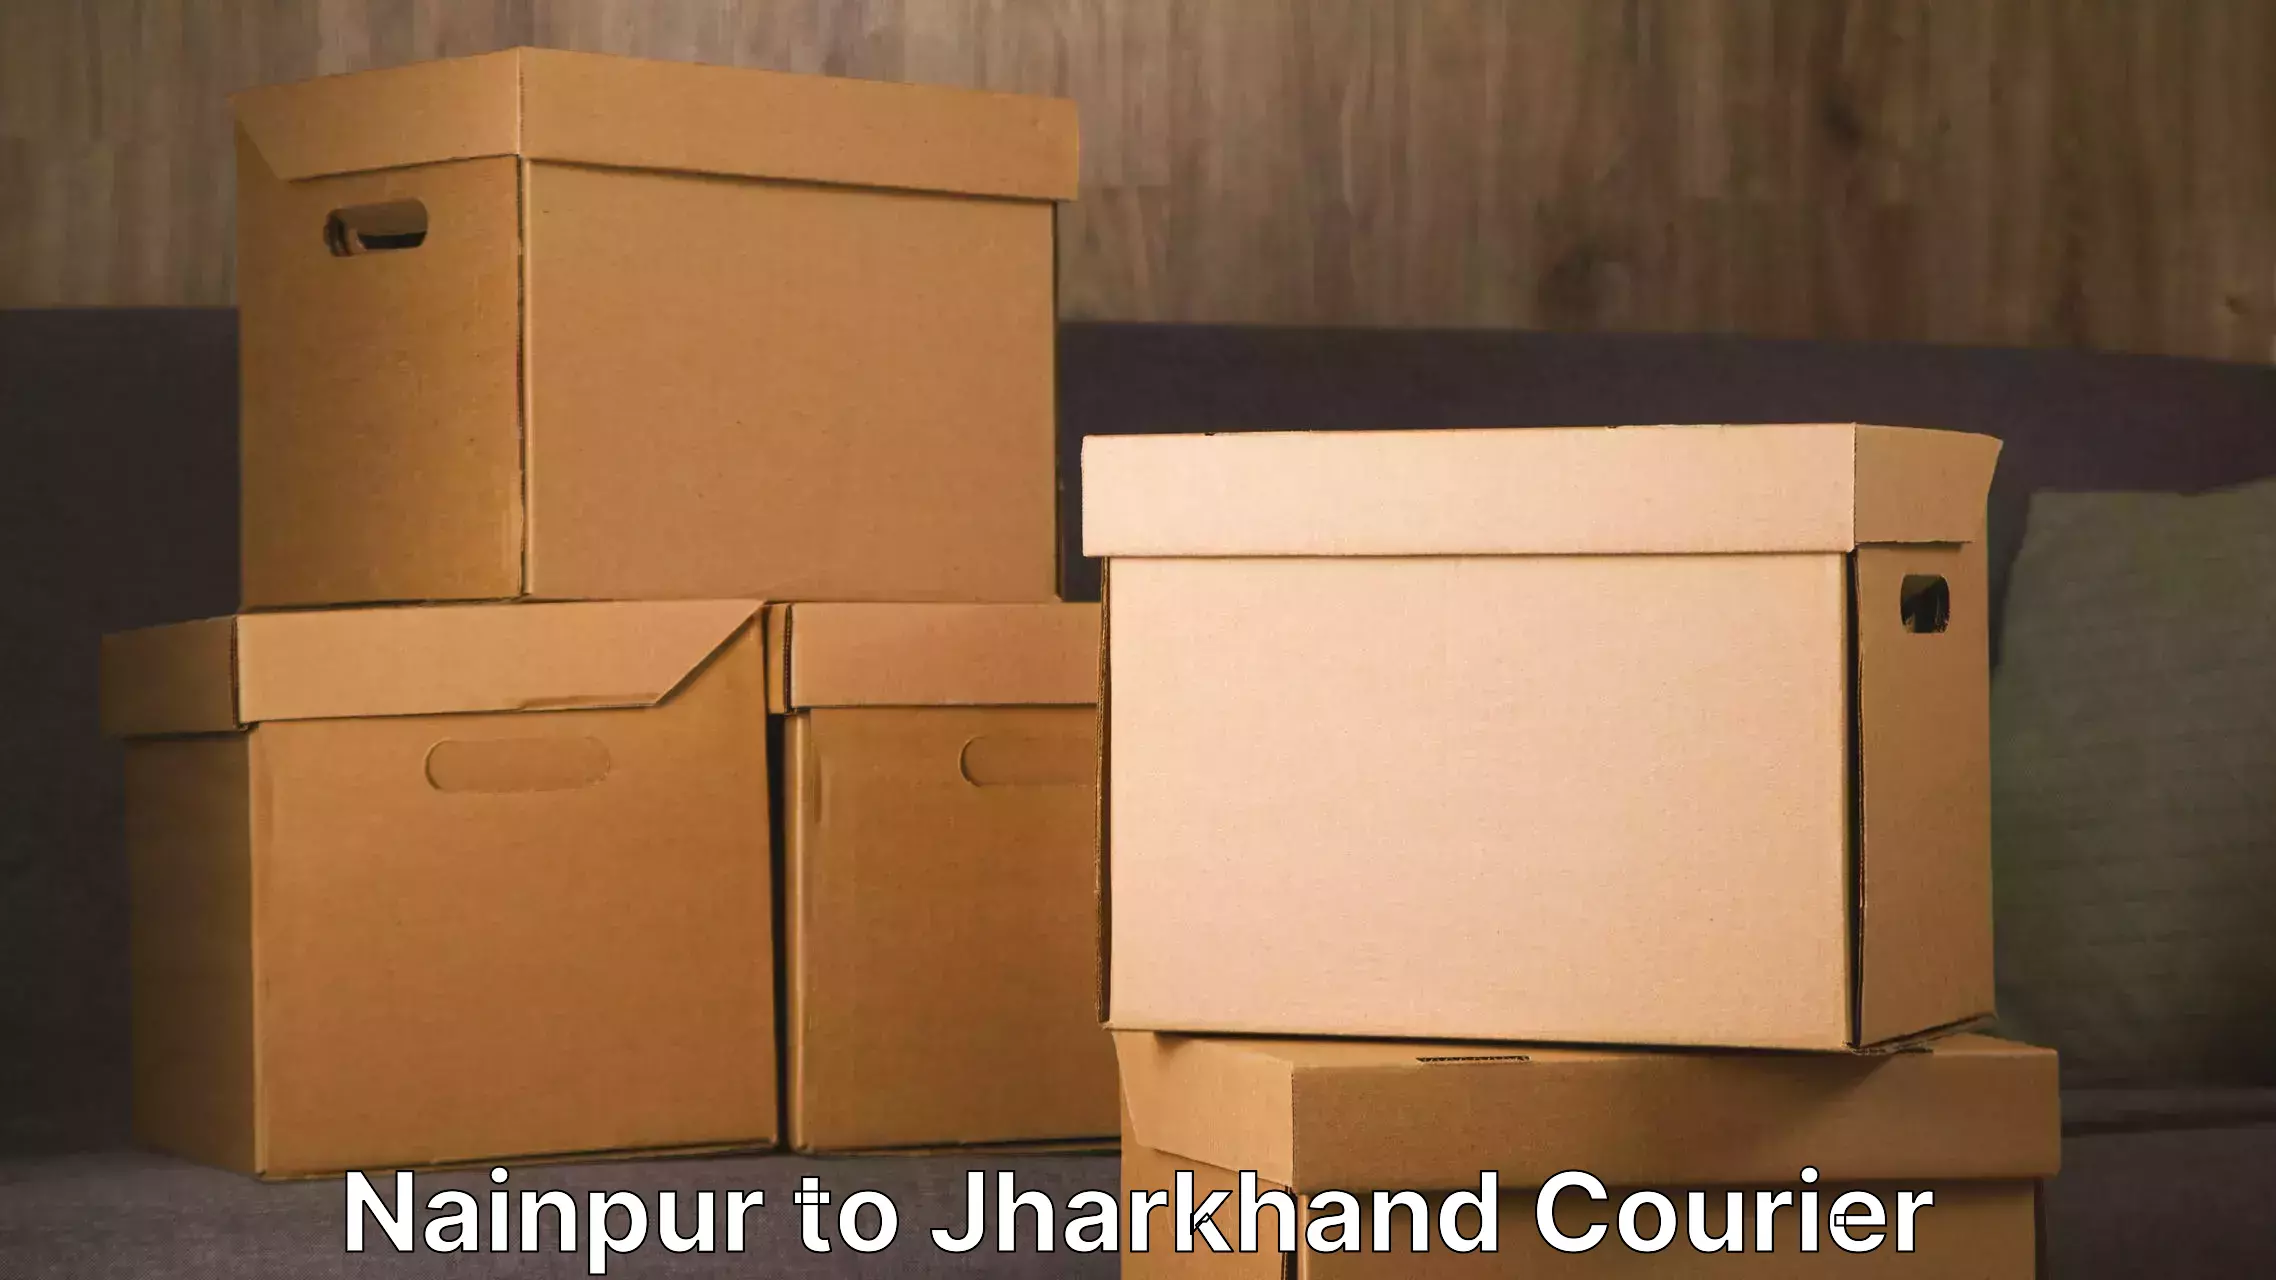 Moving and handling services Nainpur to Tandwa